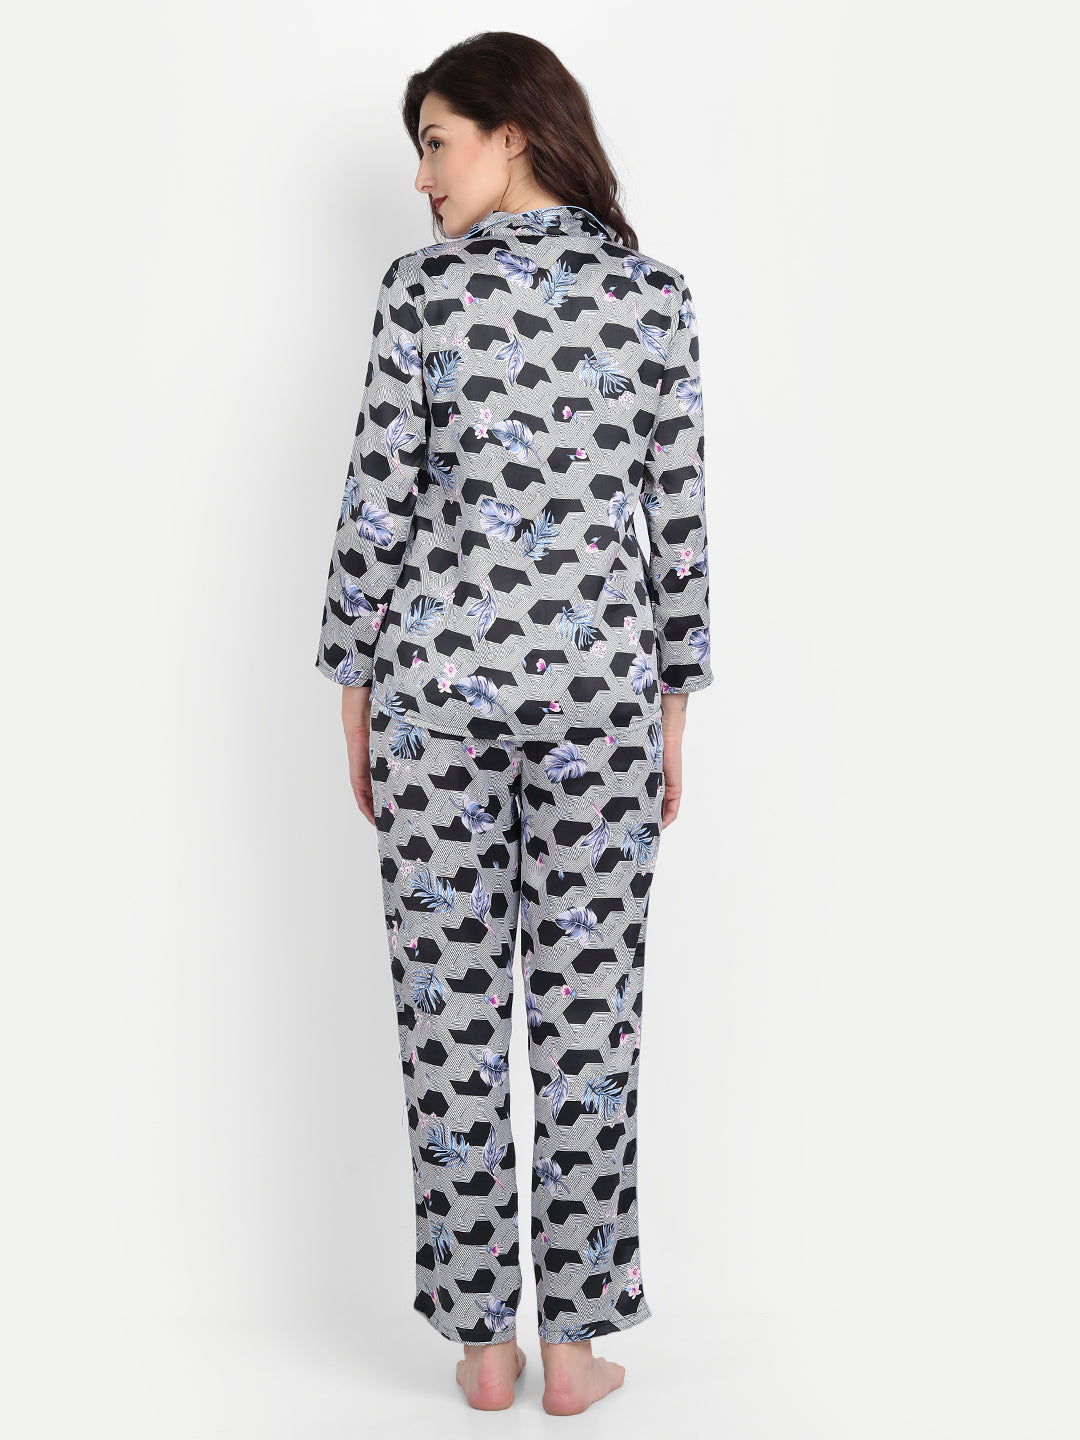 Women Satin Black & White Pyjama & Shirt Nightsuit Set